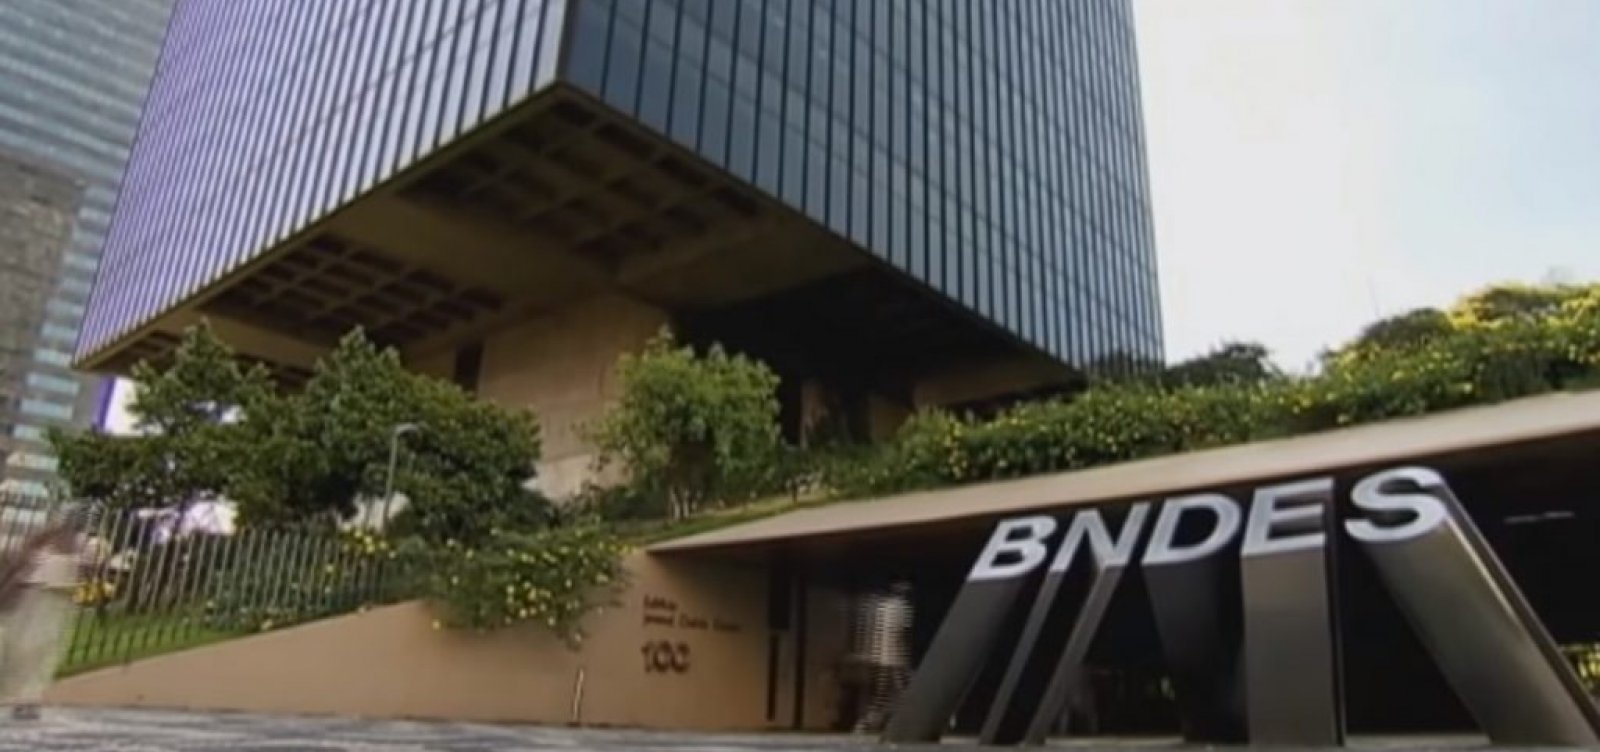 BNDES faz auditoria interna por R$ 48 milhões, mas não encontra irregularidades